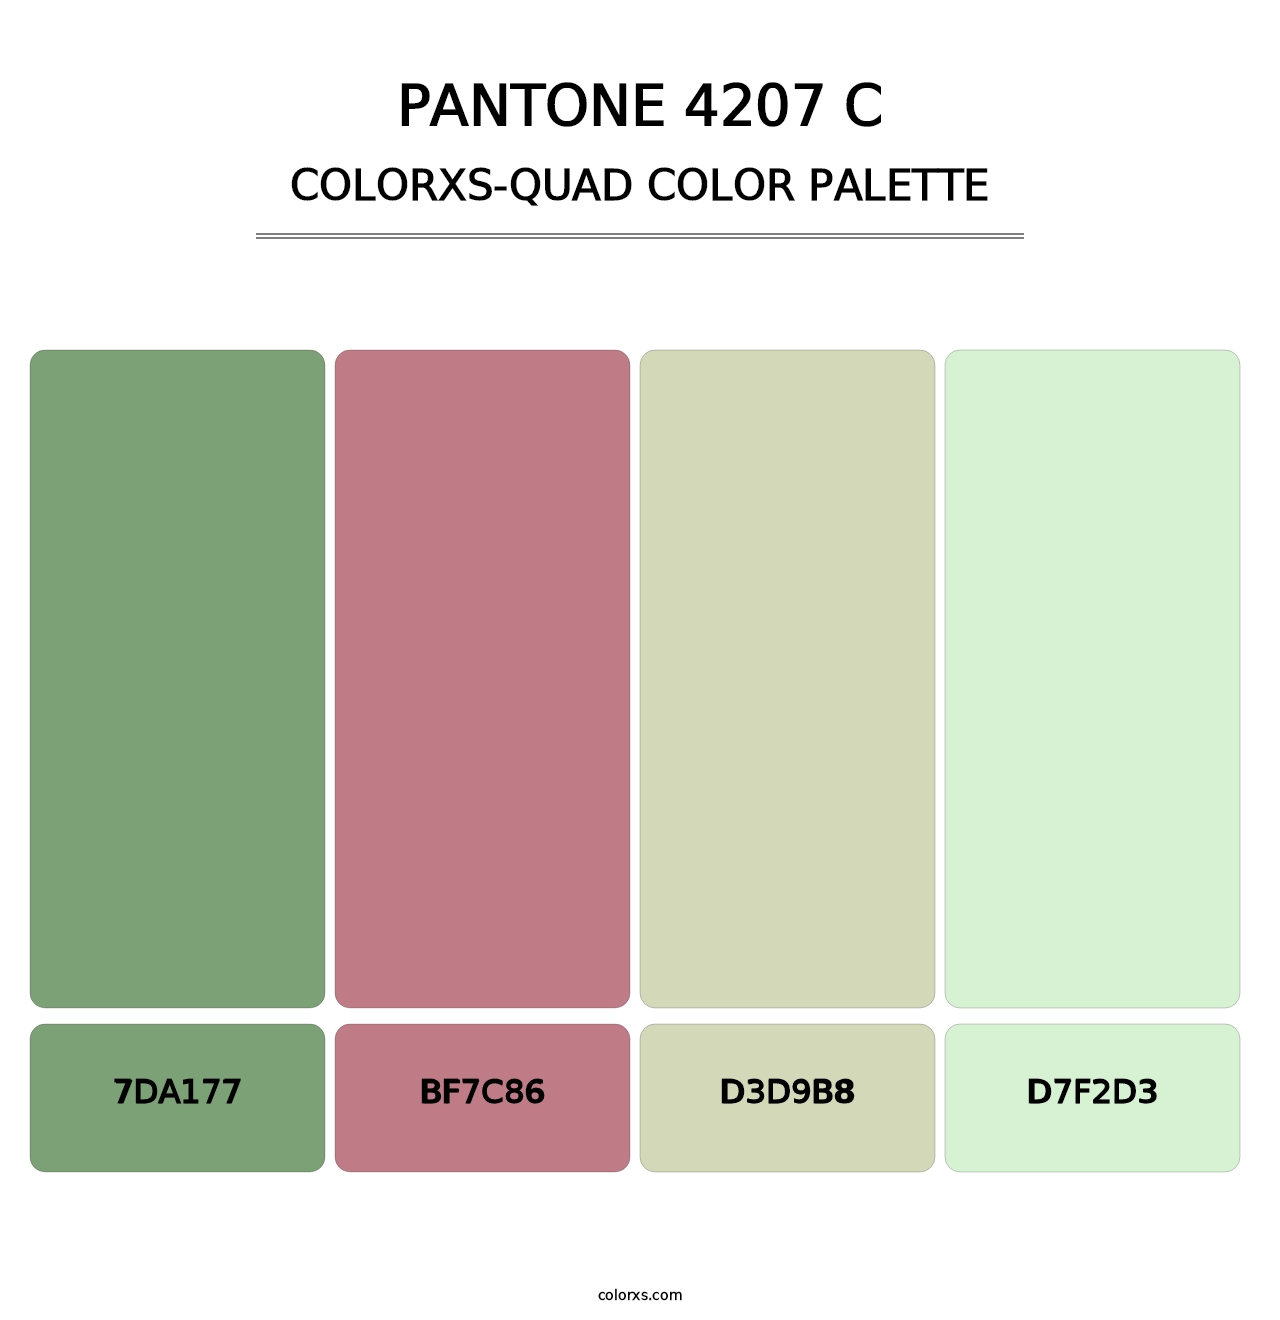 PANTONE 4207 C - Colorxs Quad Palette